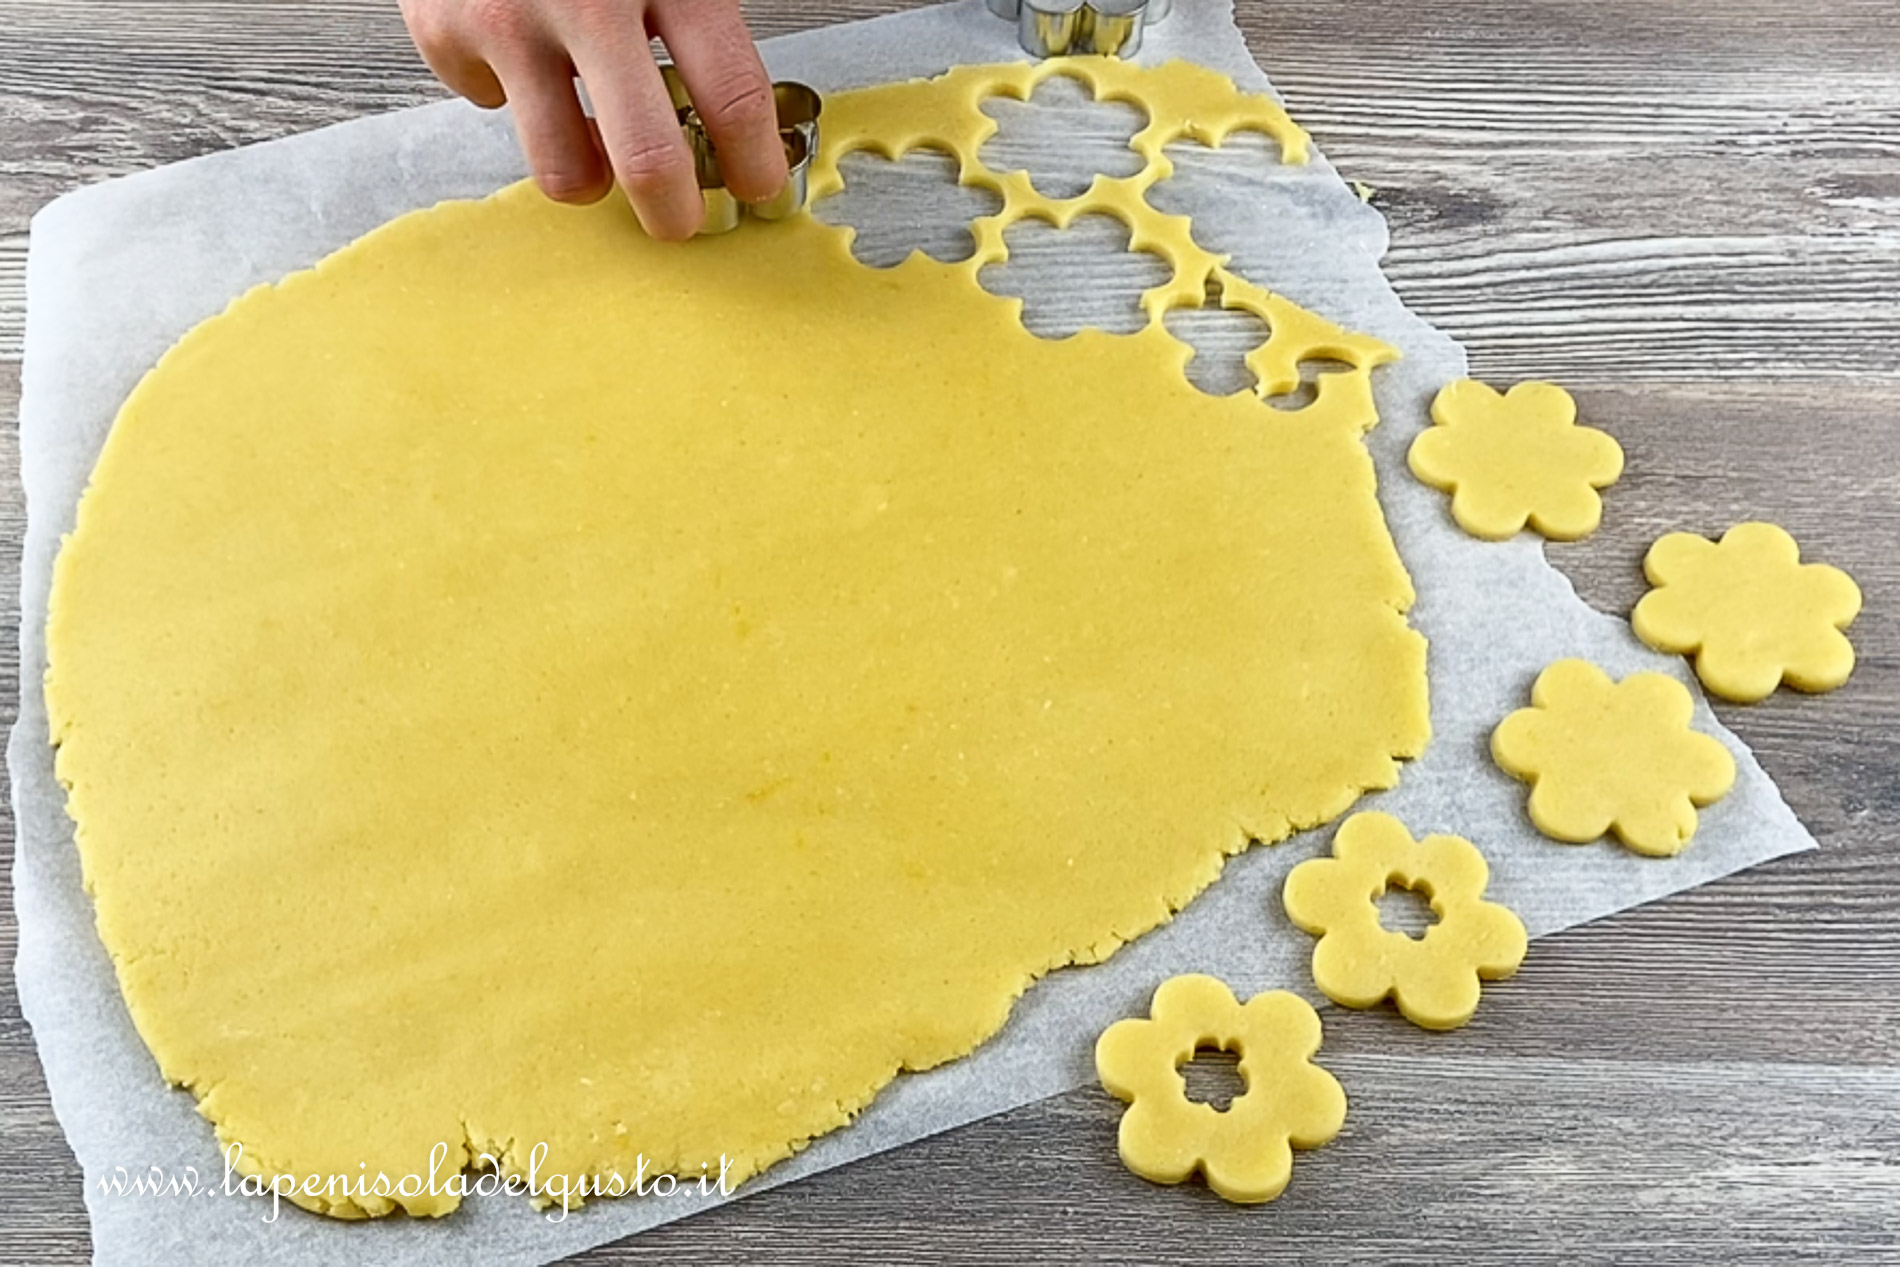 taglio i biscotti di pasta frolla con lo stampo a fiore per cuocerli